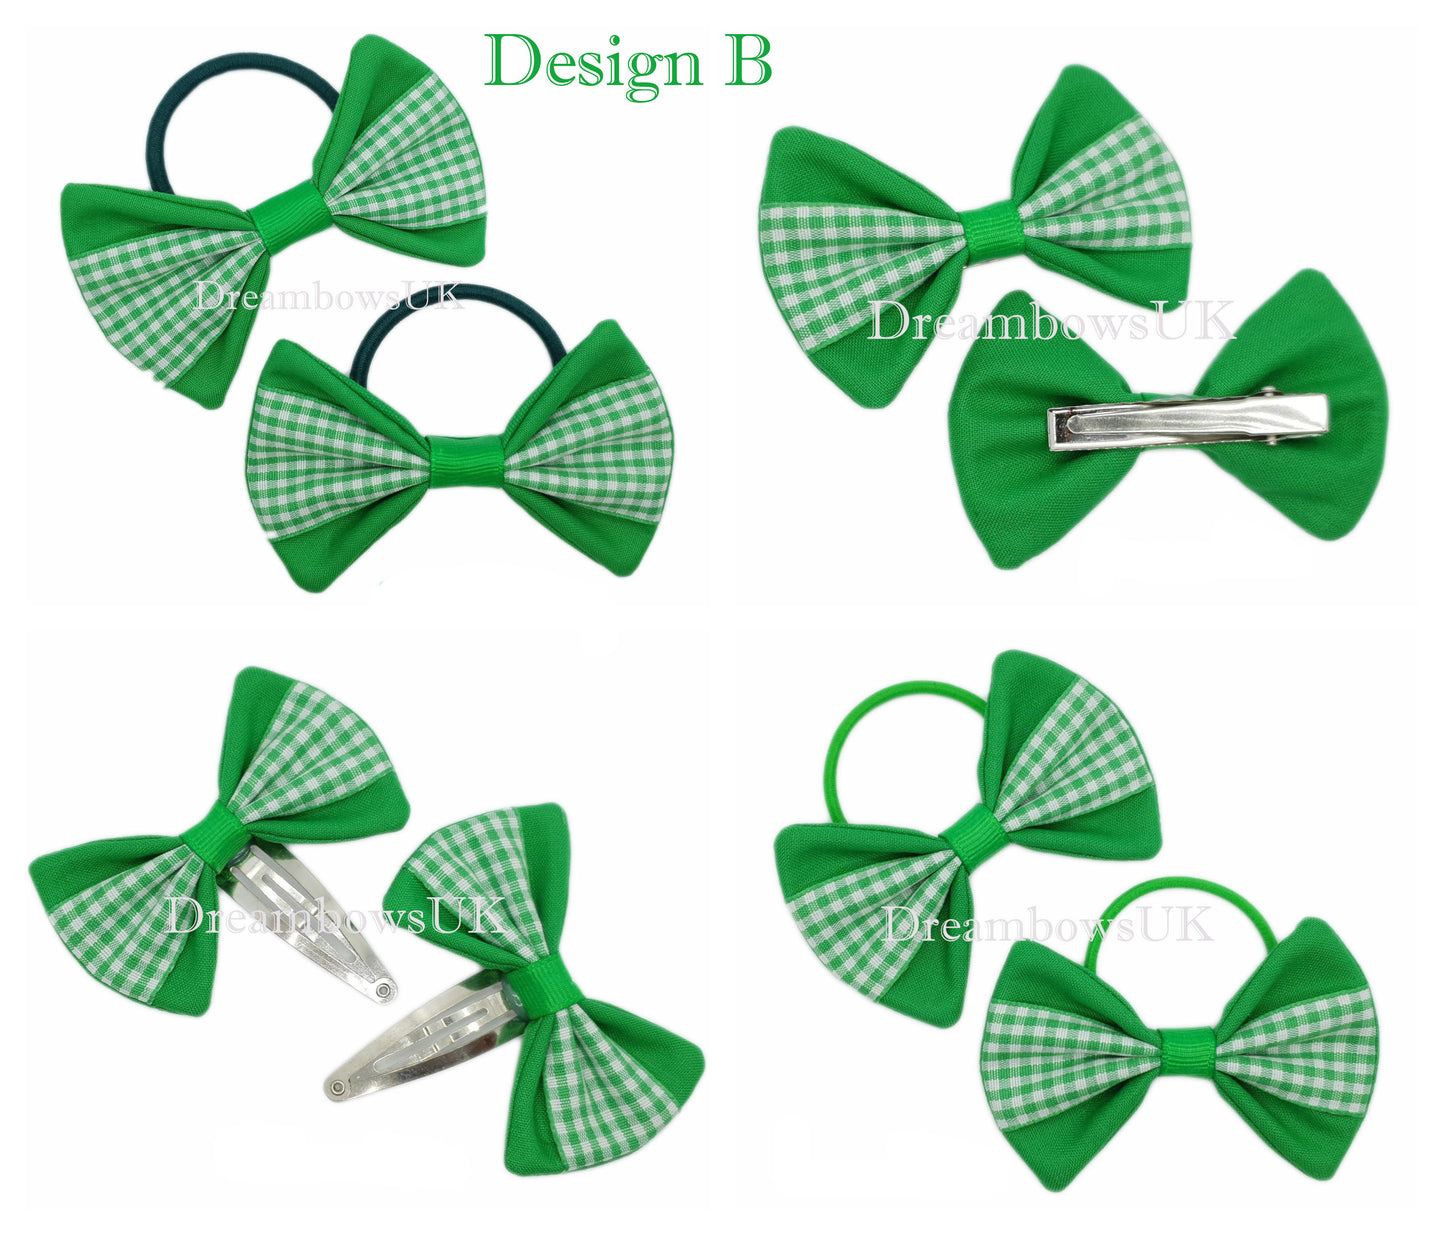 2x Emerald green gingham hair bows